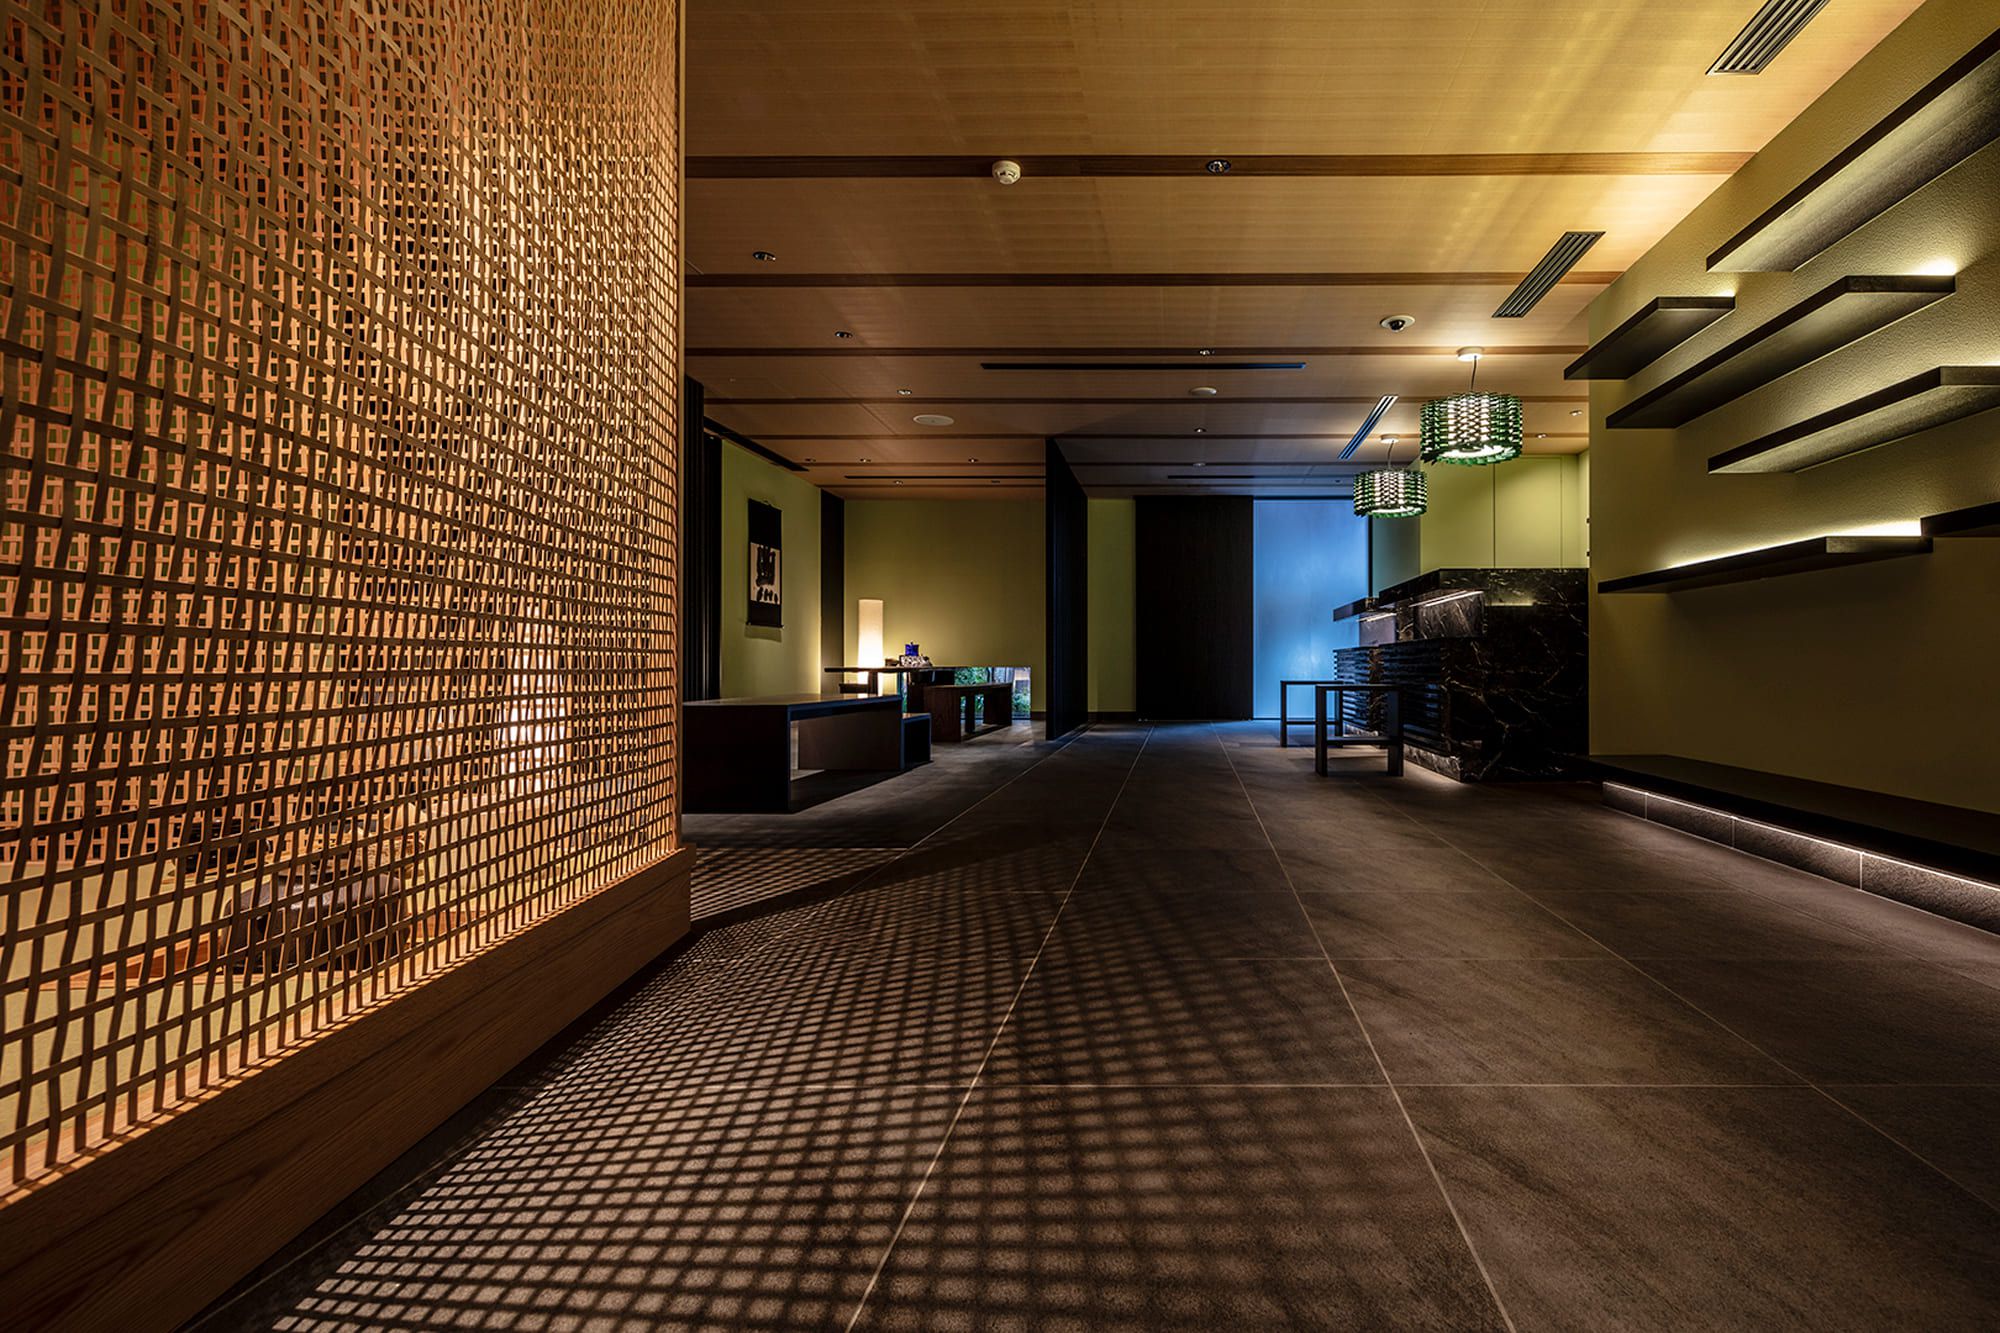 「麩屋町通り Ⅱ」のレセプション。内田繁デザインの茶室「山居」を通した陰影が美しい